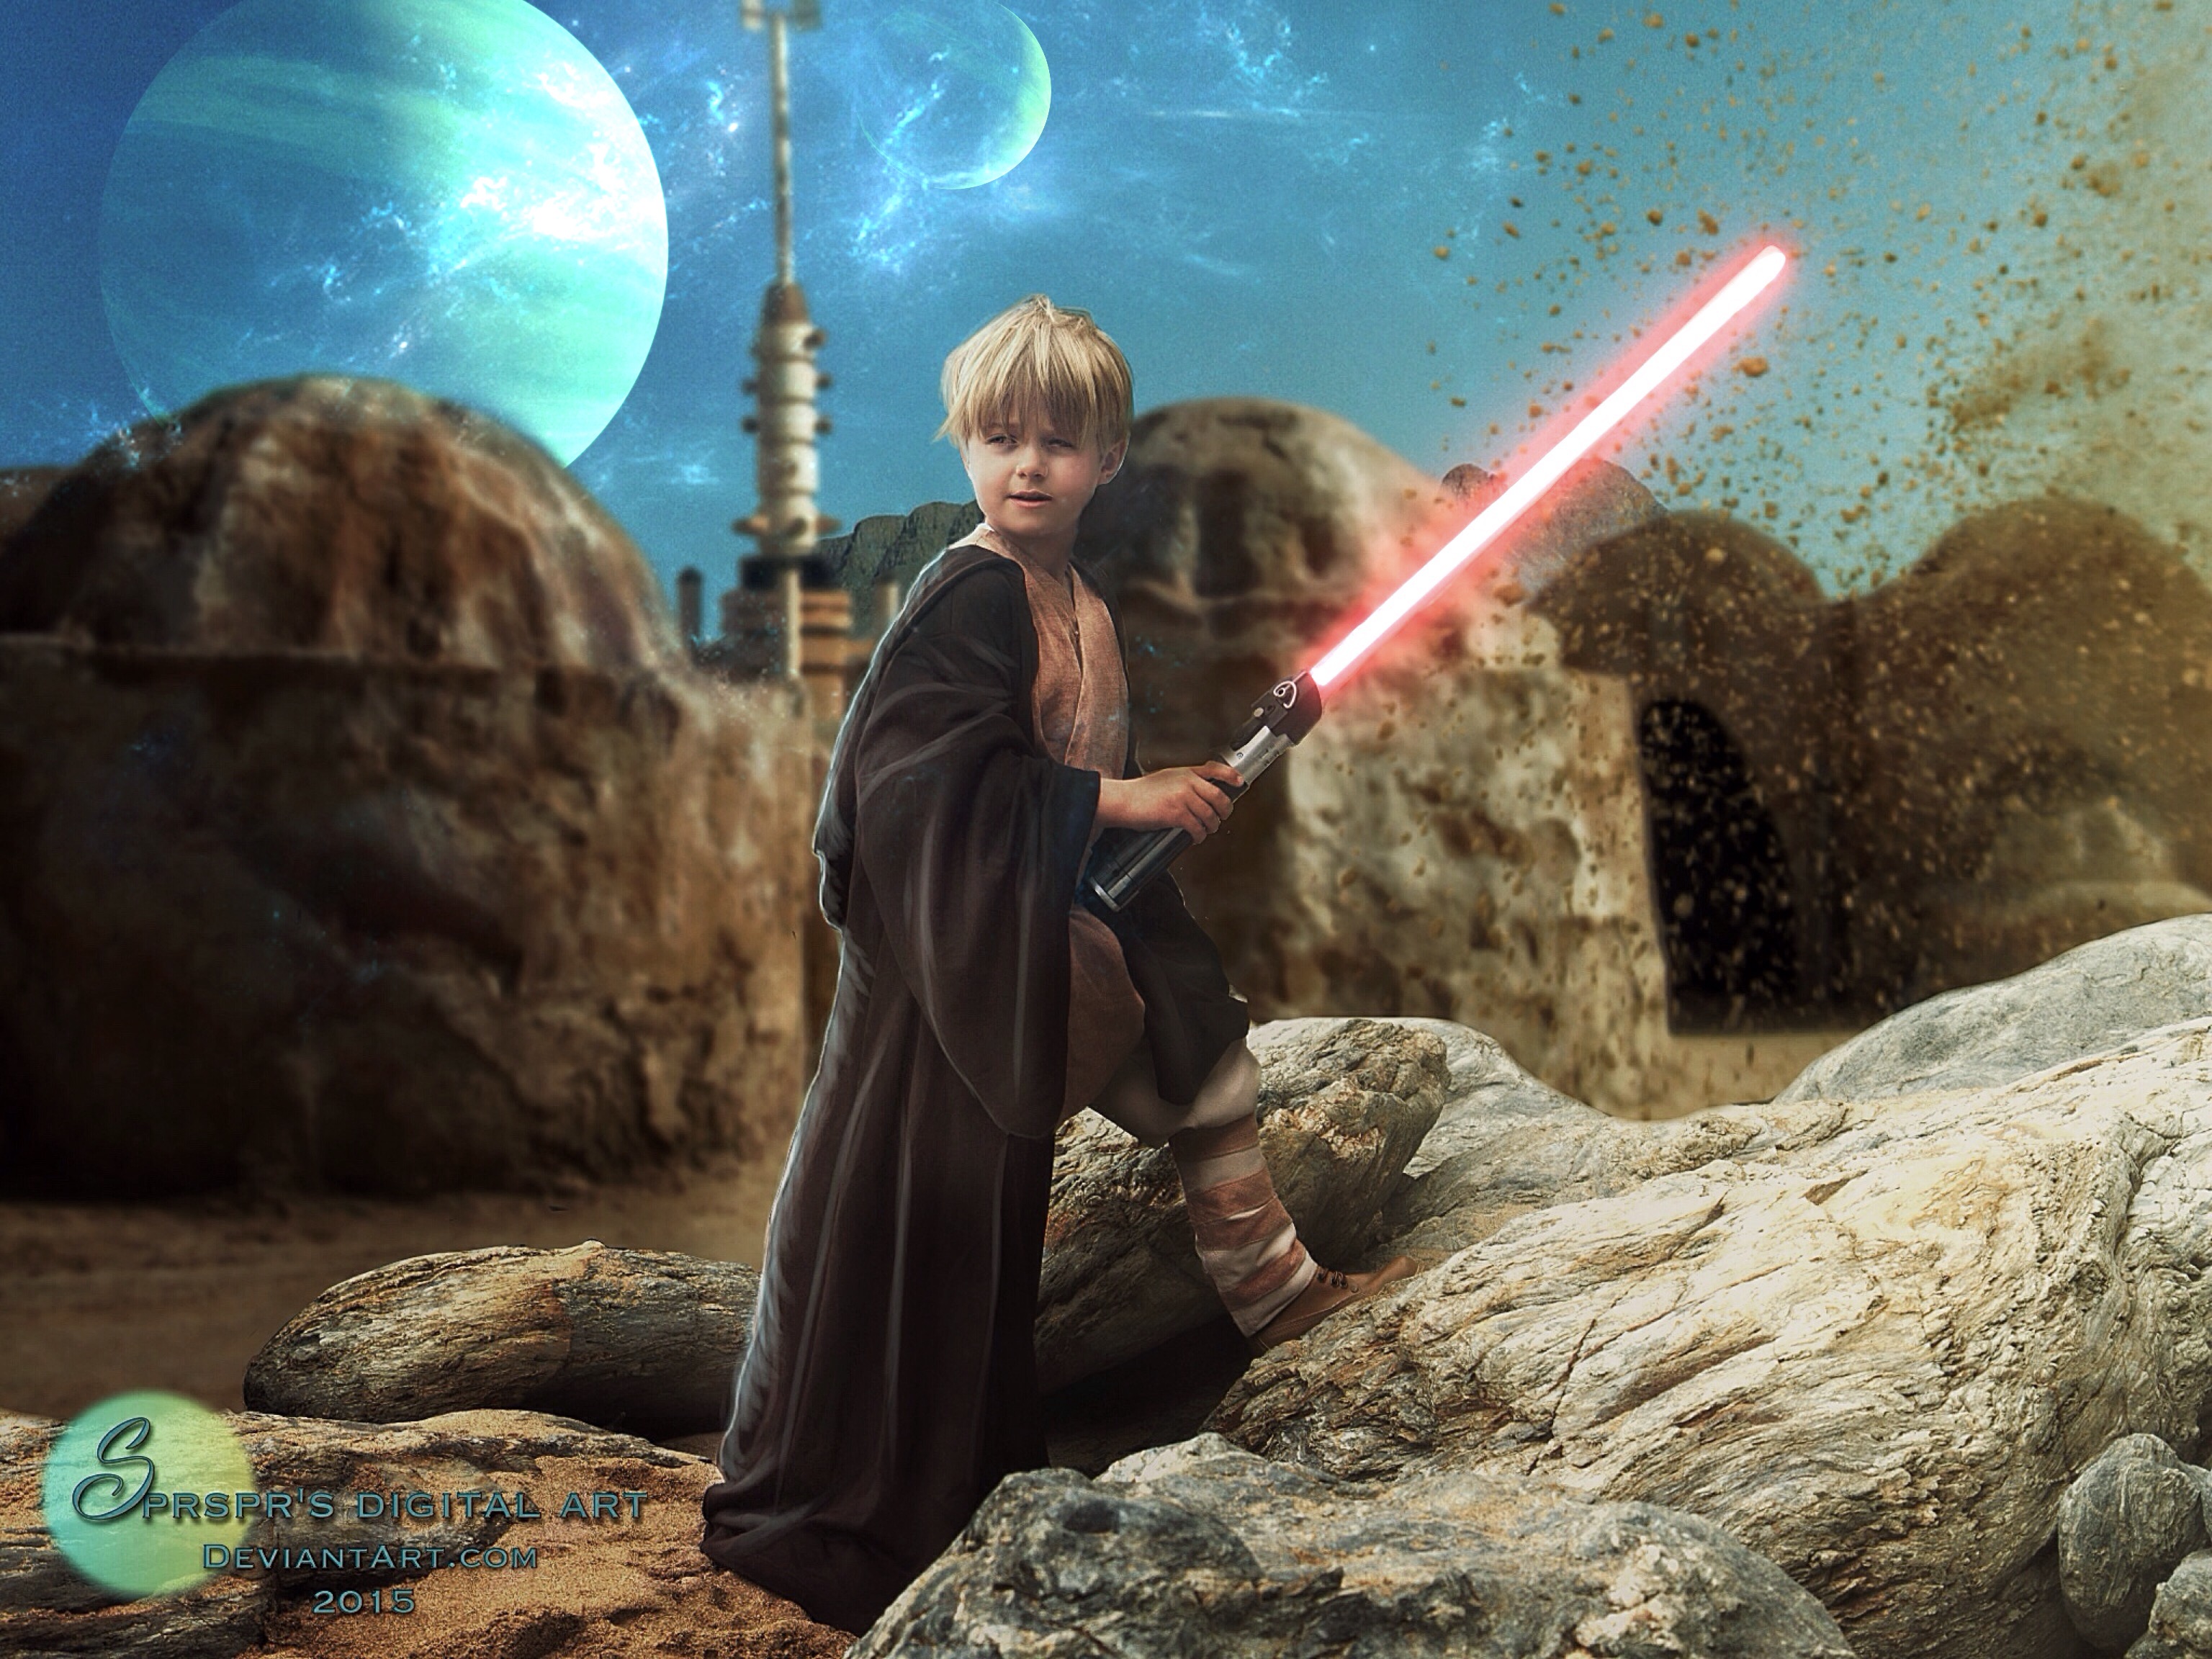 Anakin Skywalker by SPRSPRsDigitalArt on DeviantArt.